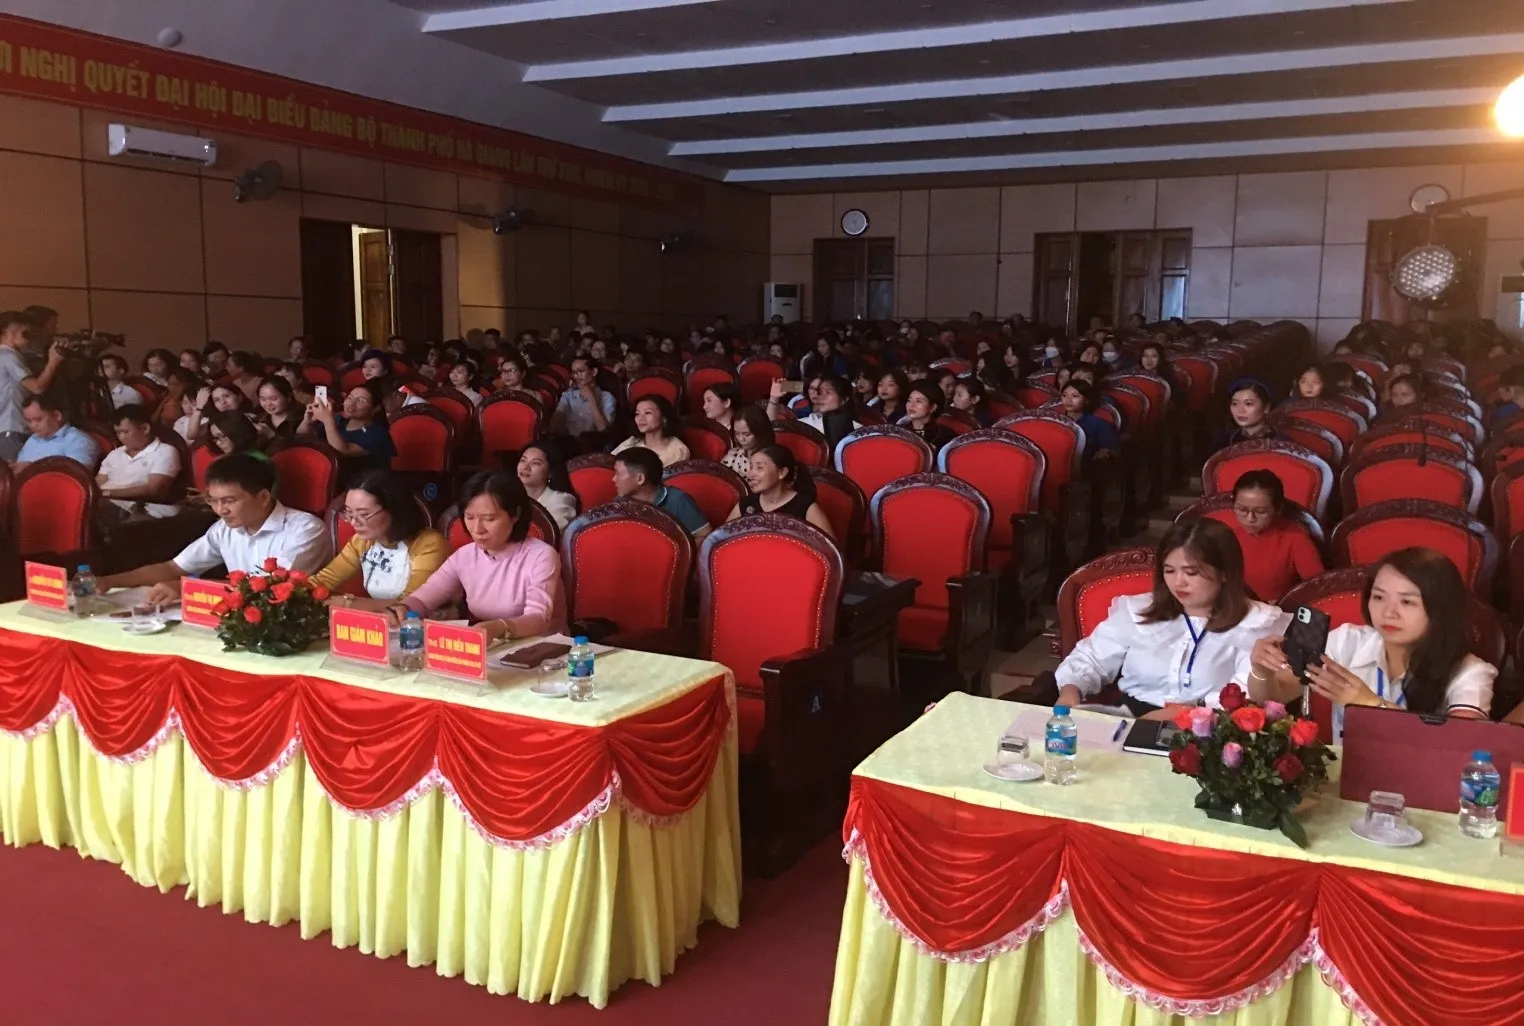 TopEvent - Công ty tổ chức sự kiện chuyên nghiệp hàng đầu tại Việt Nam